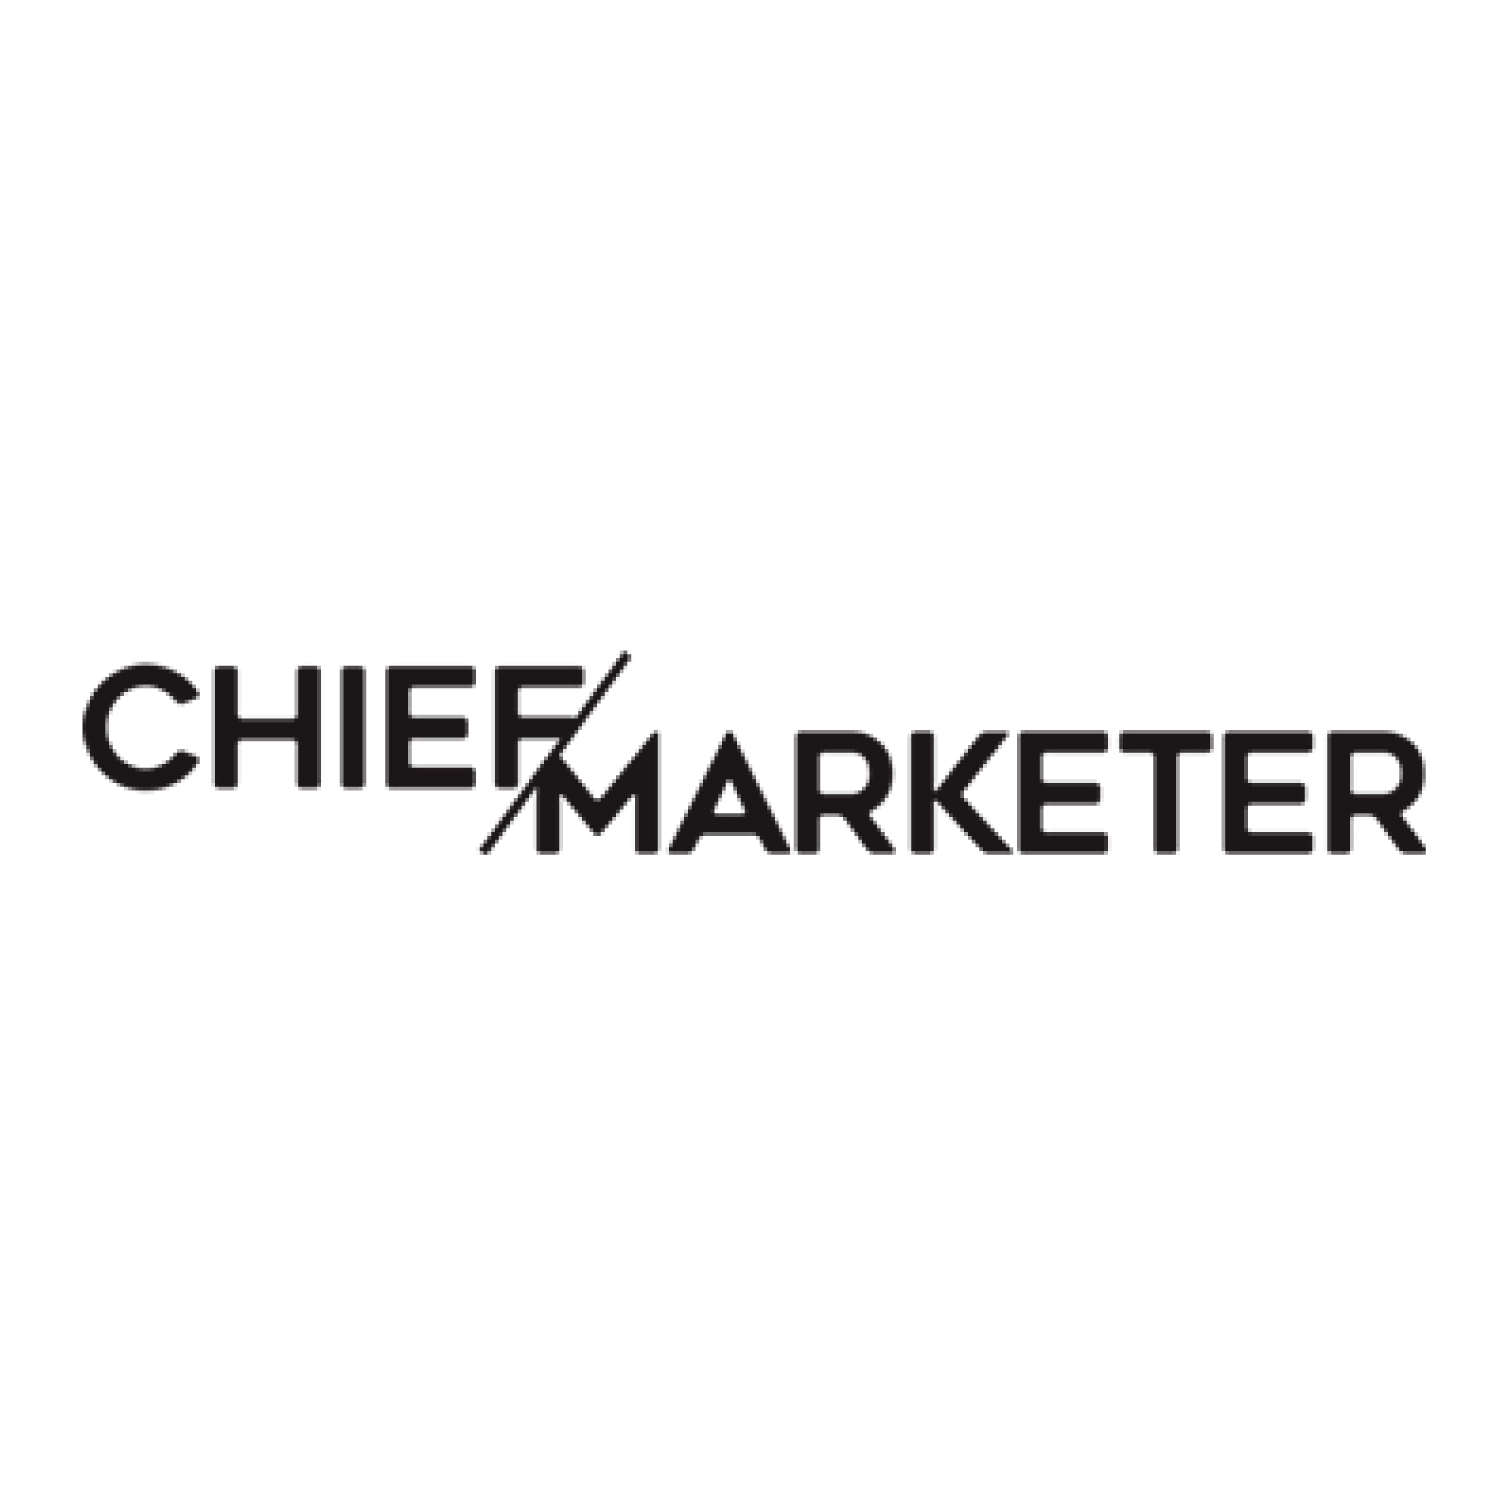 ChiefMarketer